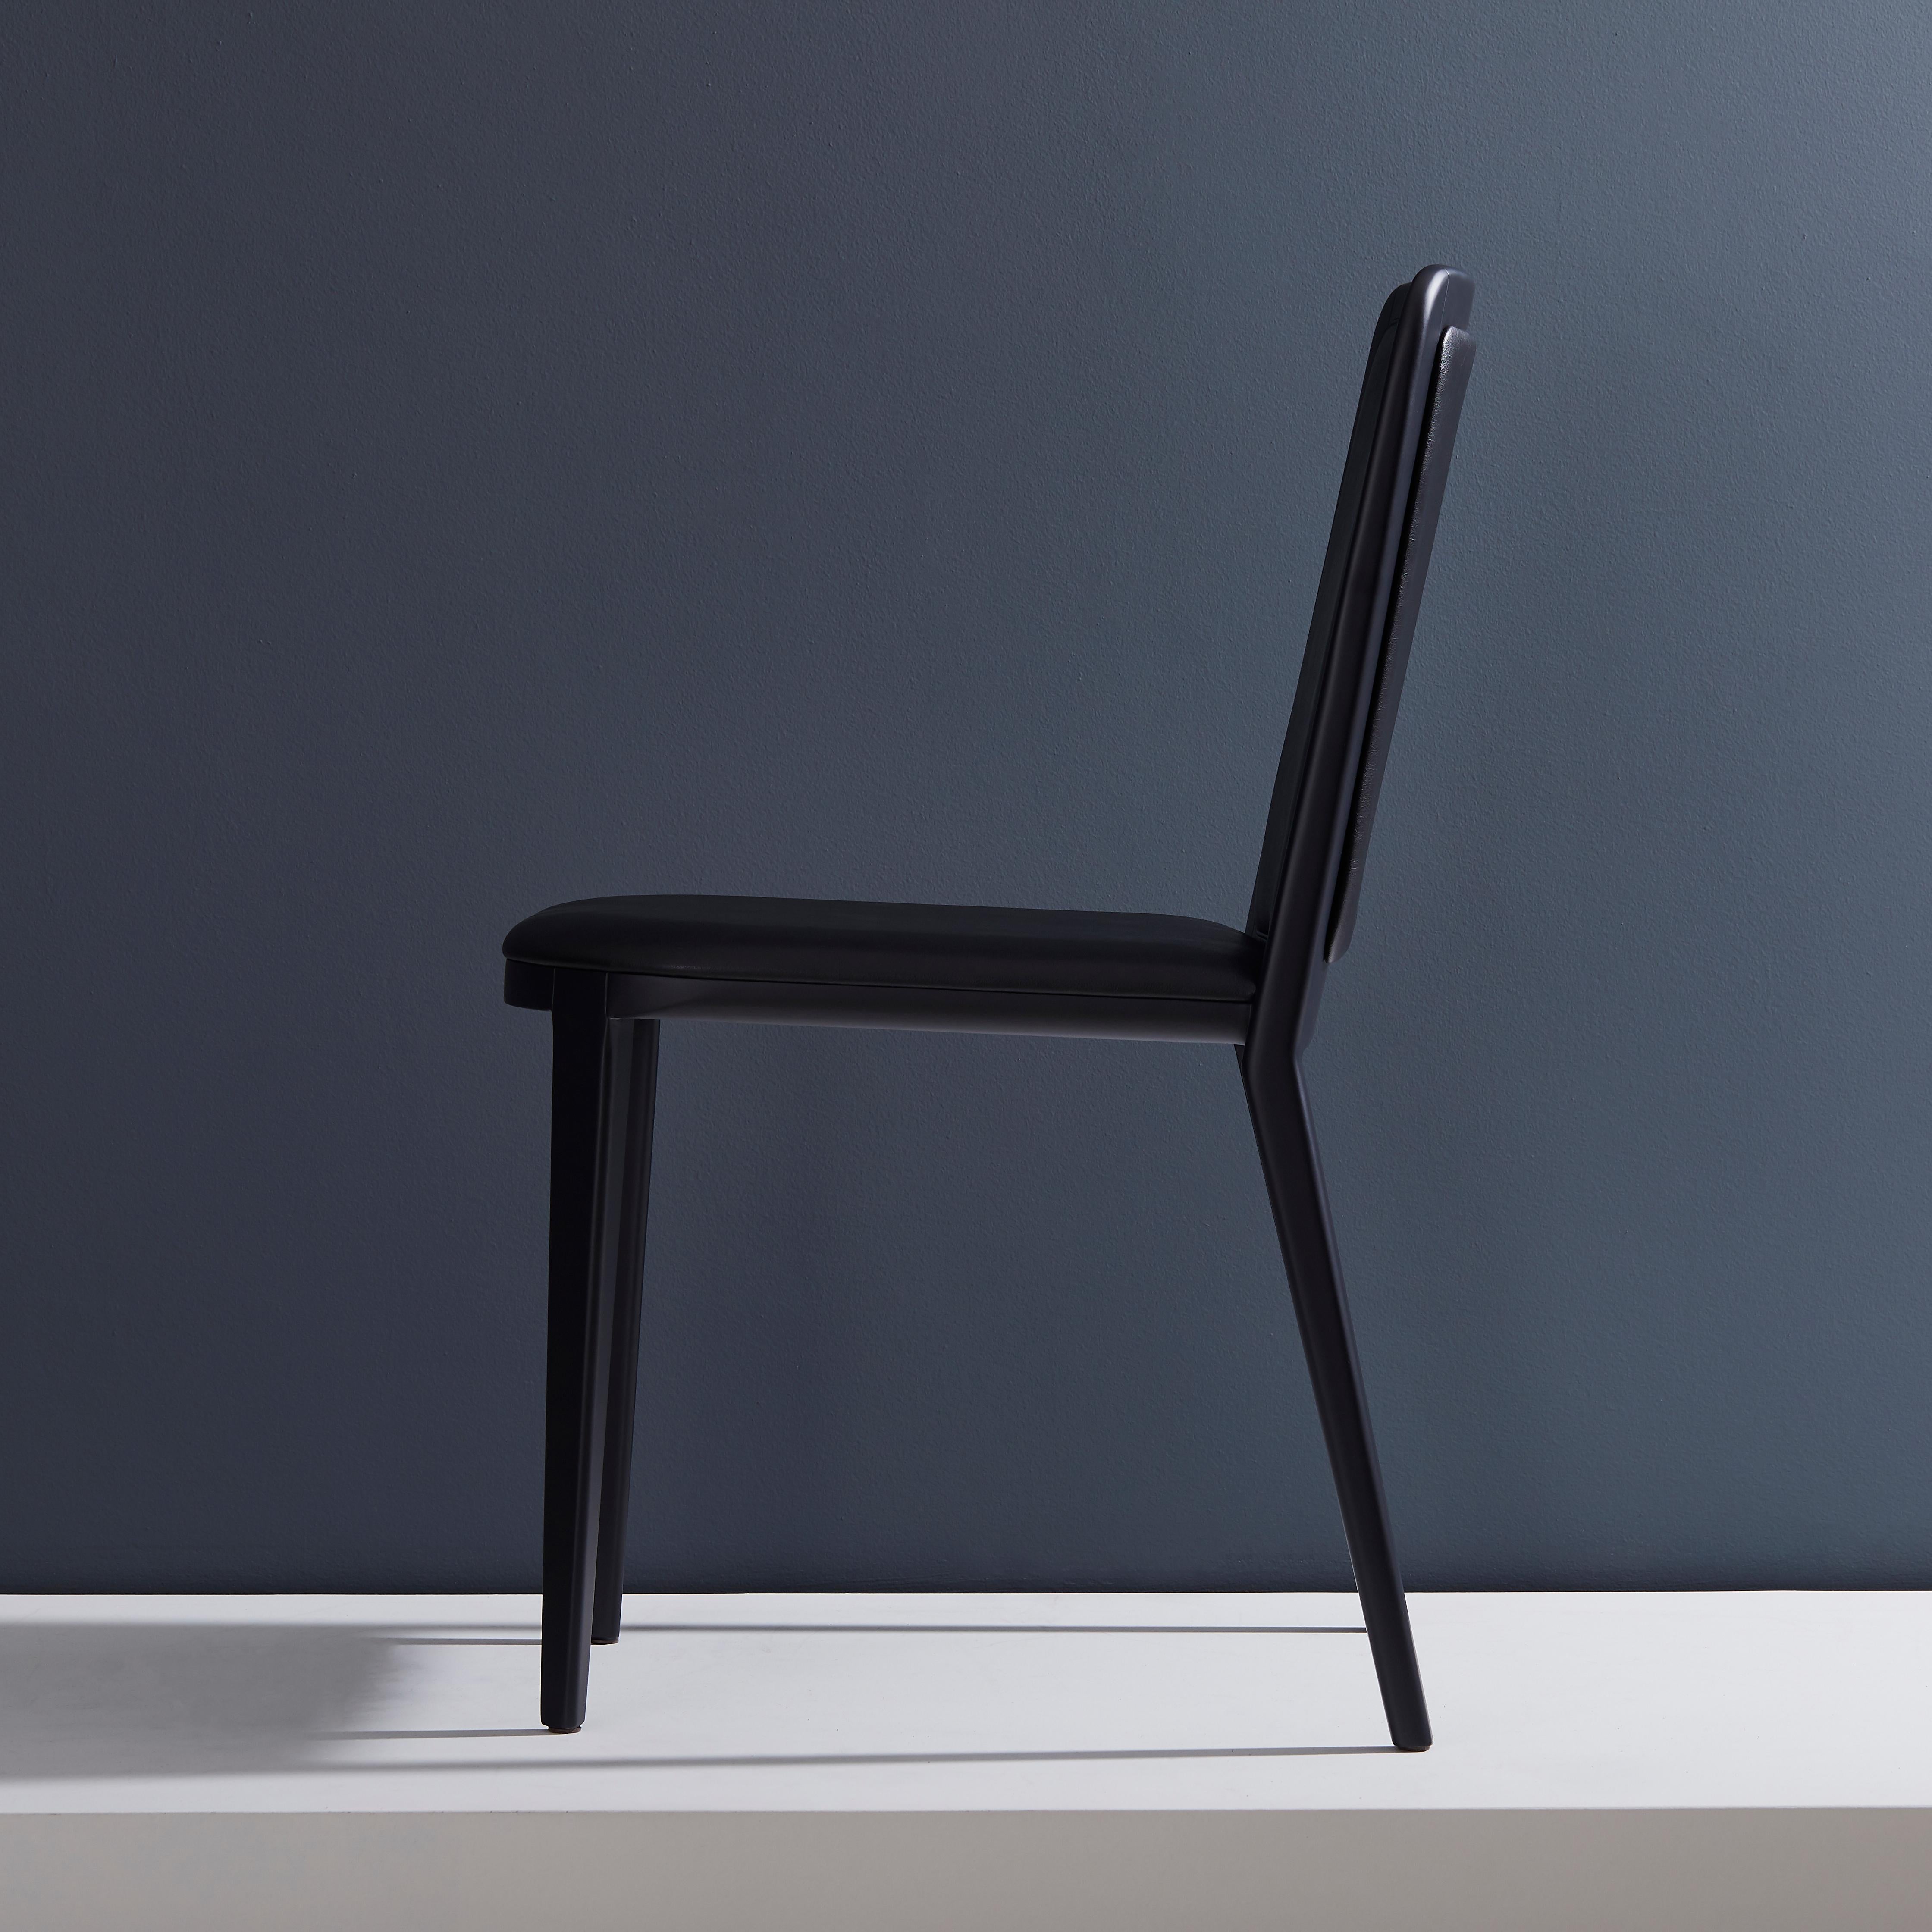 Brésilien Chaise en bois massif de style minimaliste, siège en cuir, panneau arrière tapissé en vente